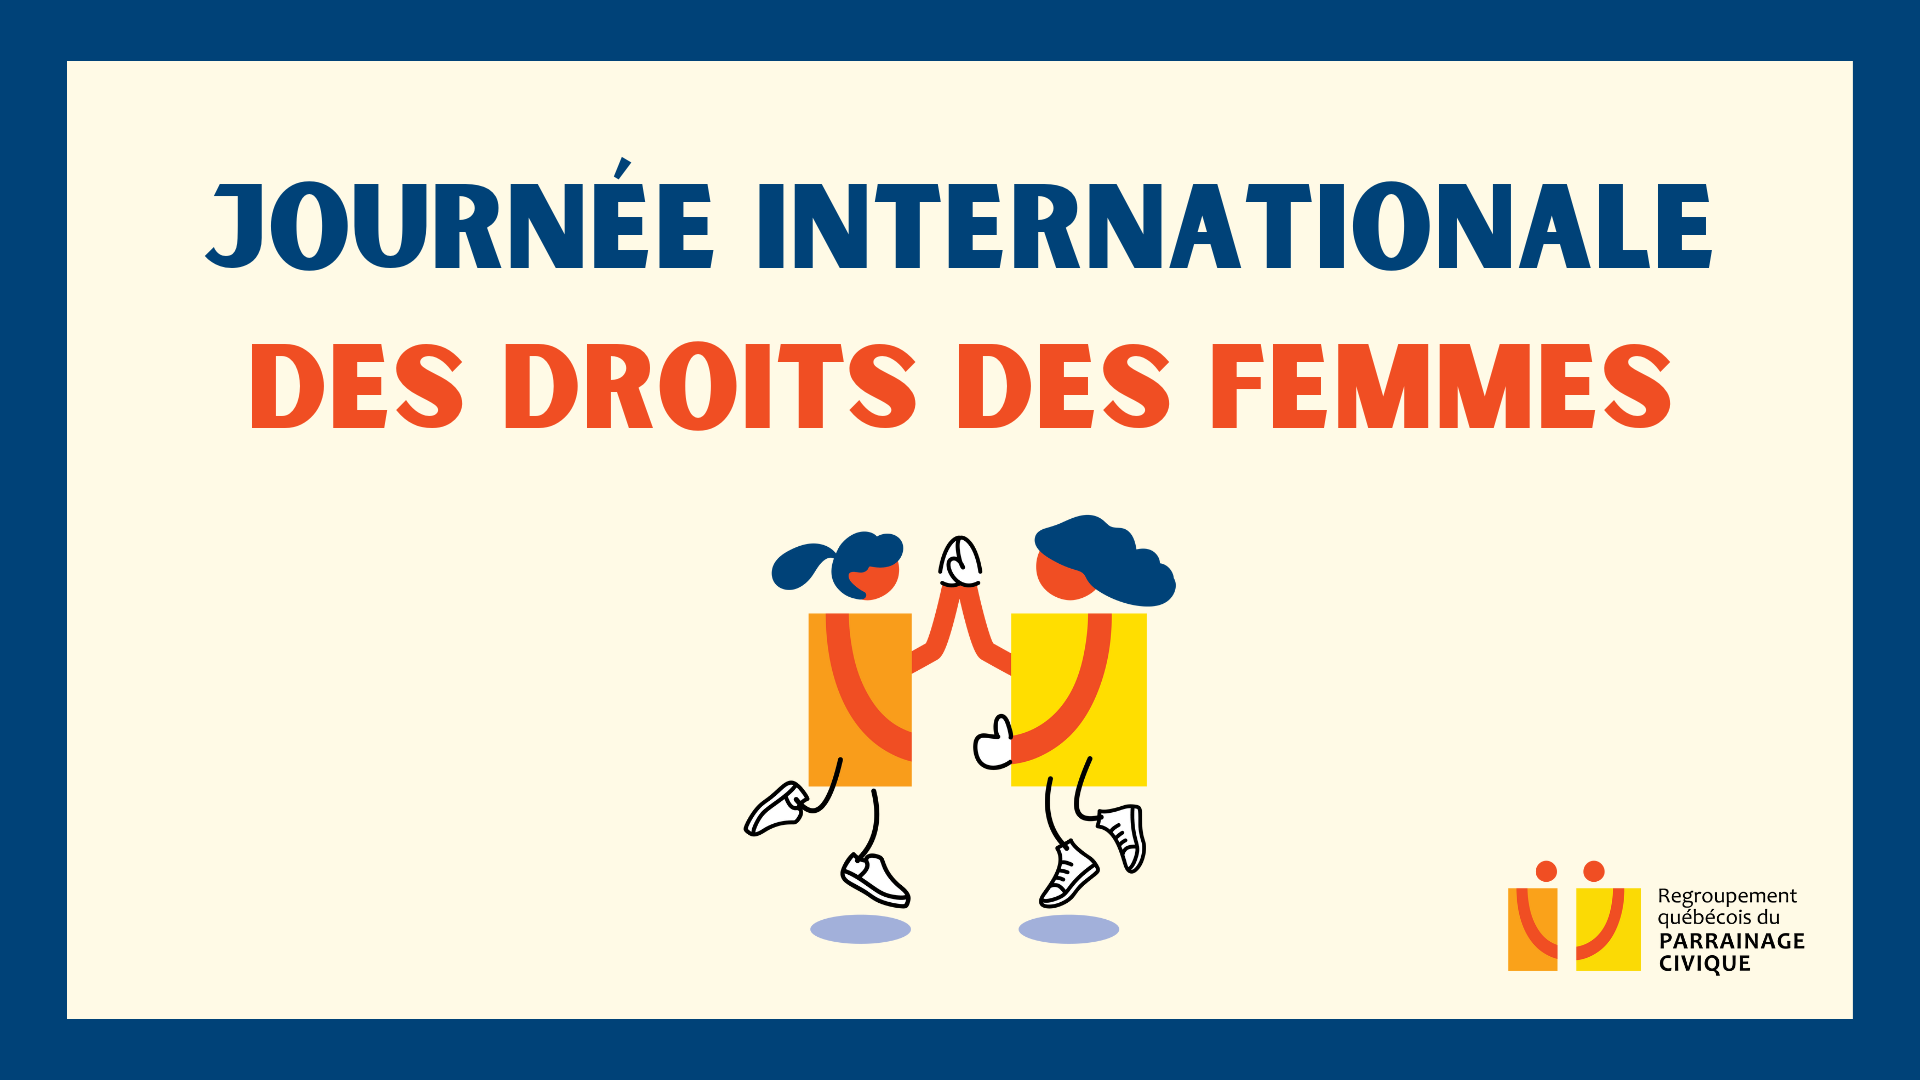 Journée internationale des droits des femmes calendrier des journées internationale du regroupement du Parrainage civique